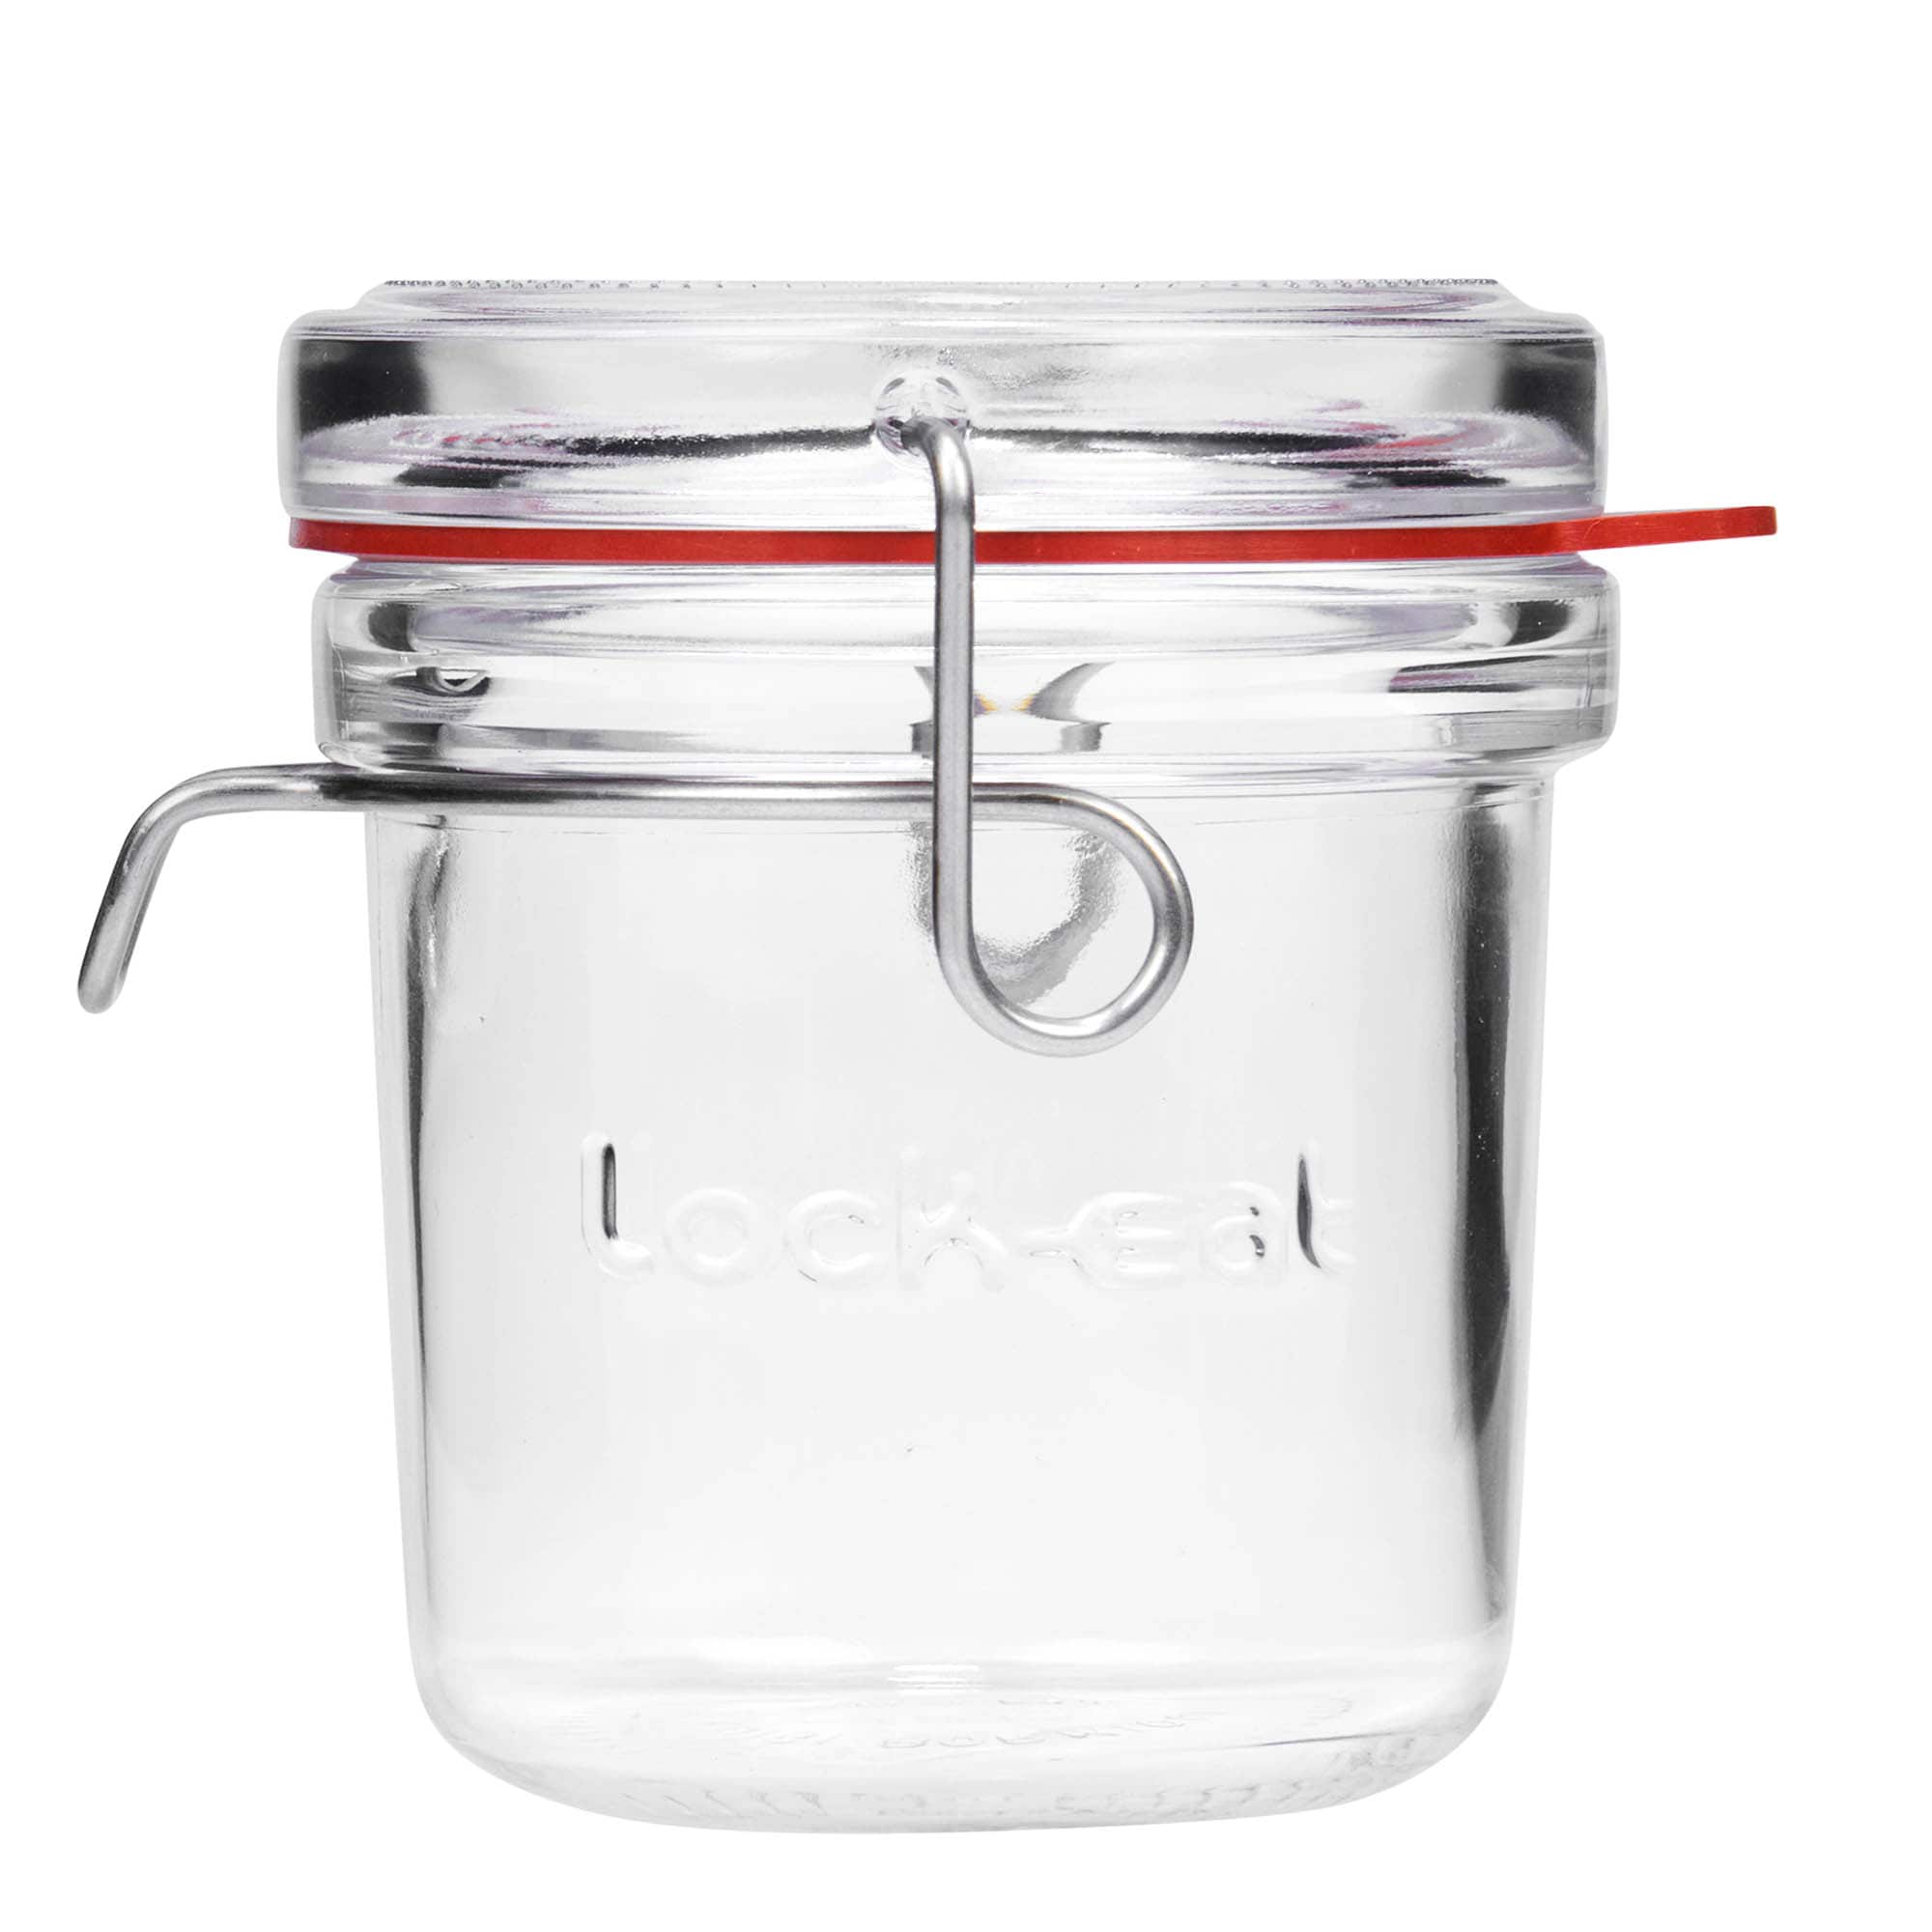 200 ml clip top jar 'Lock-Eat', closure: clip top